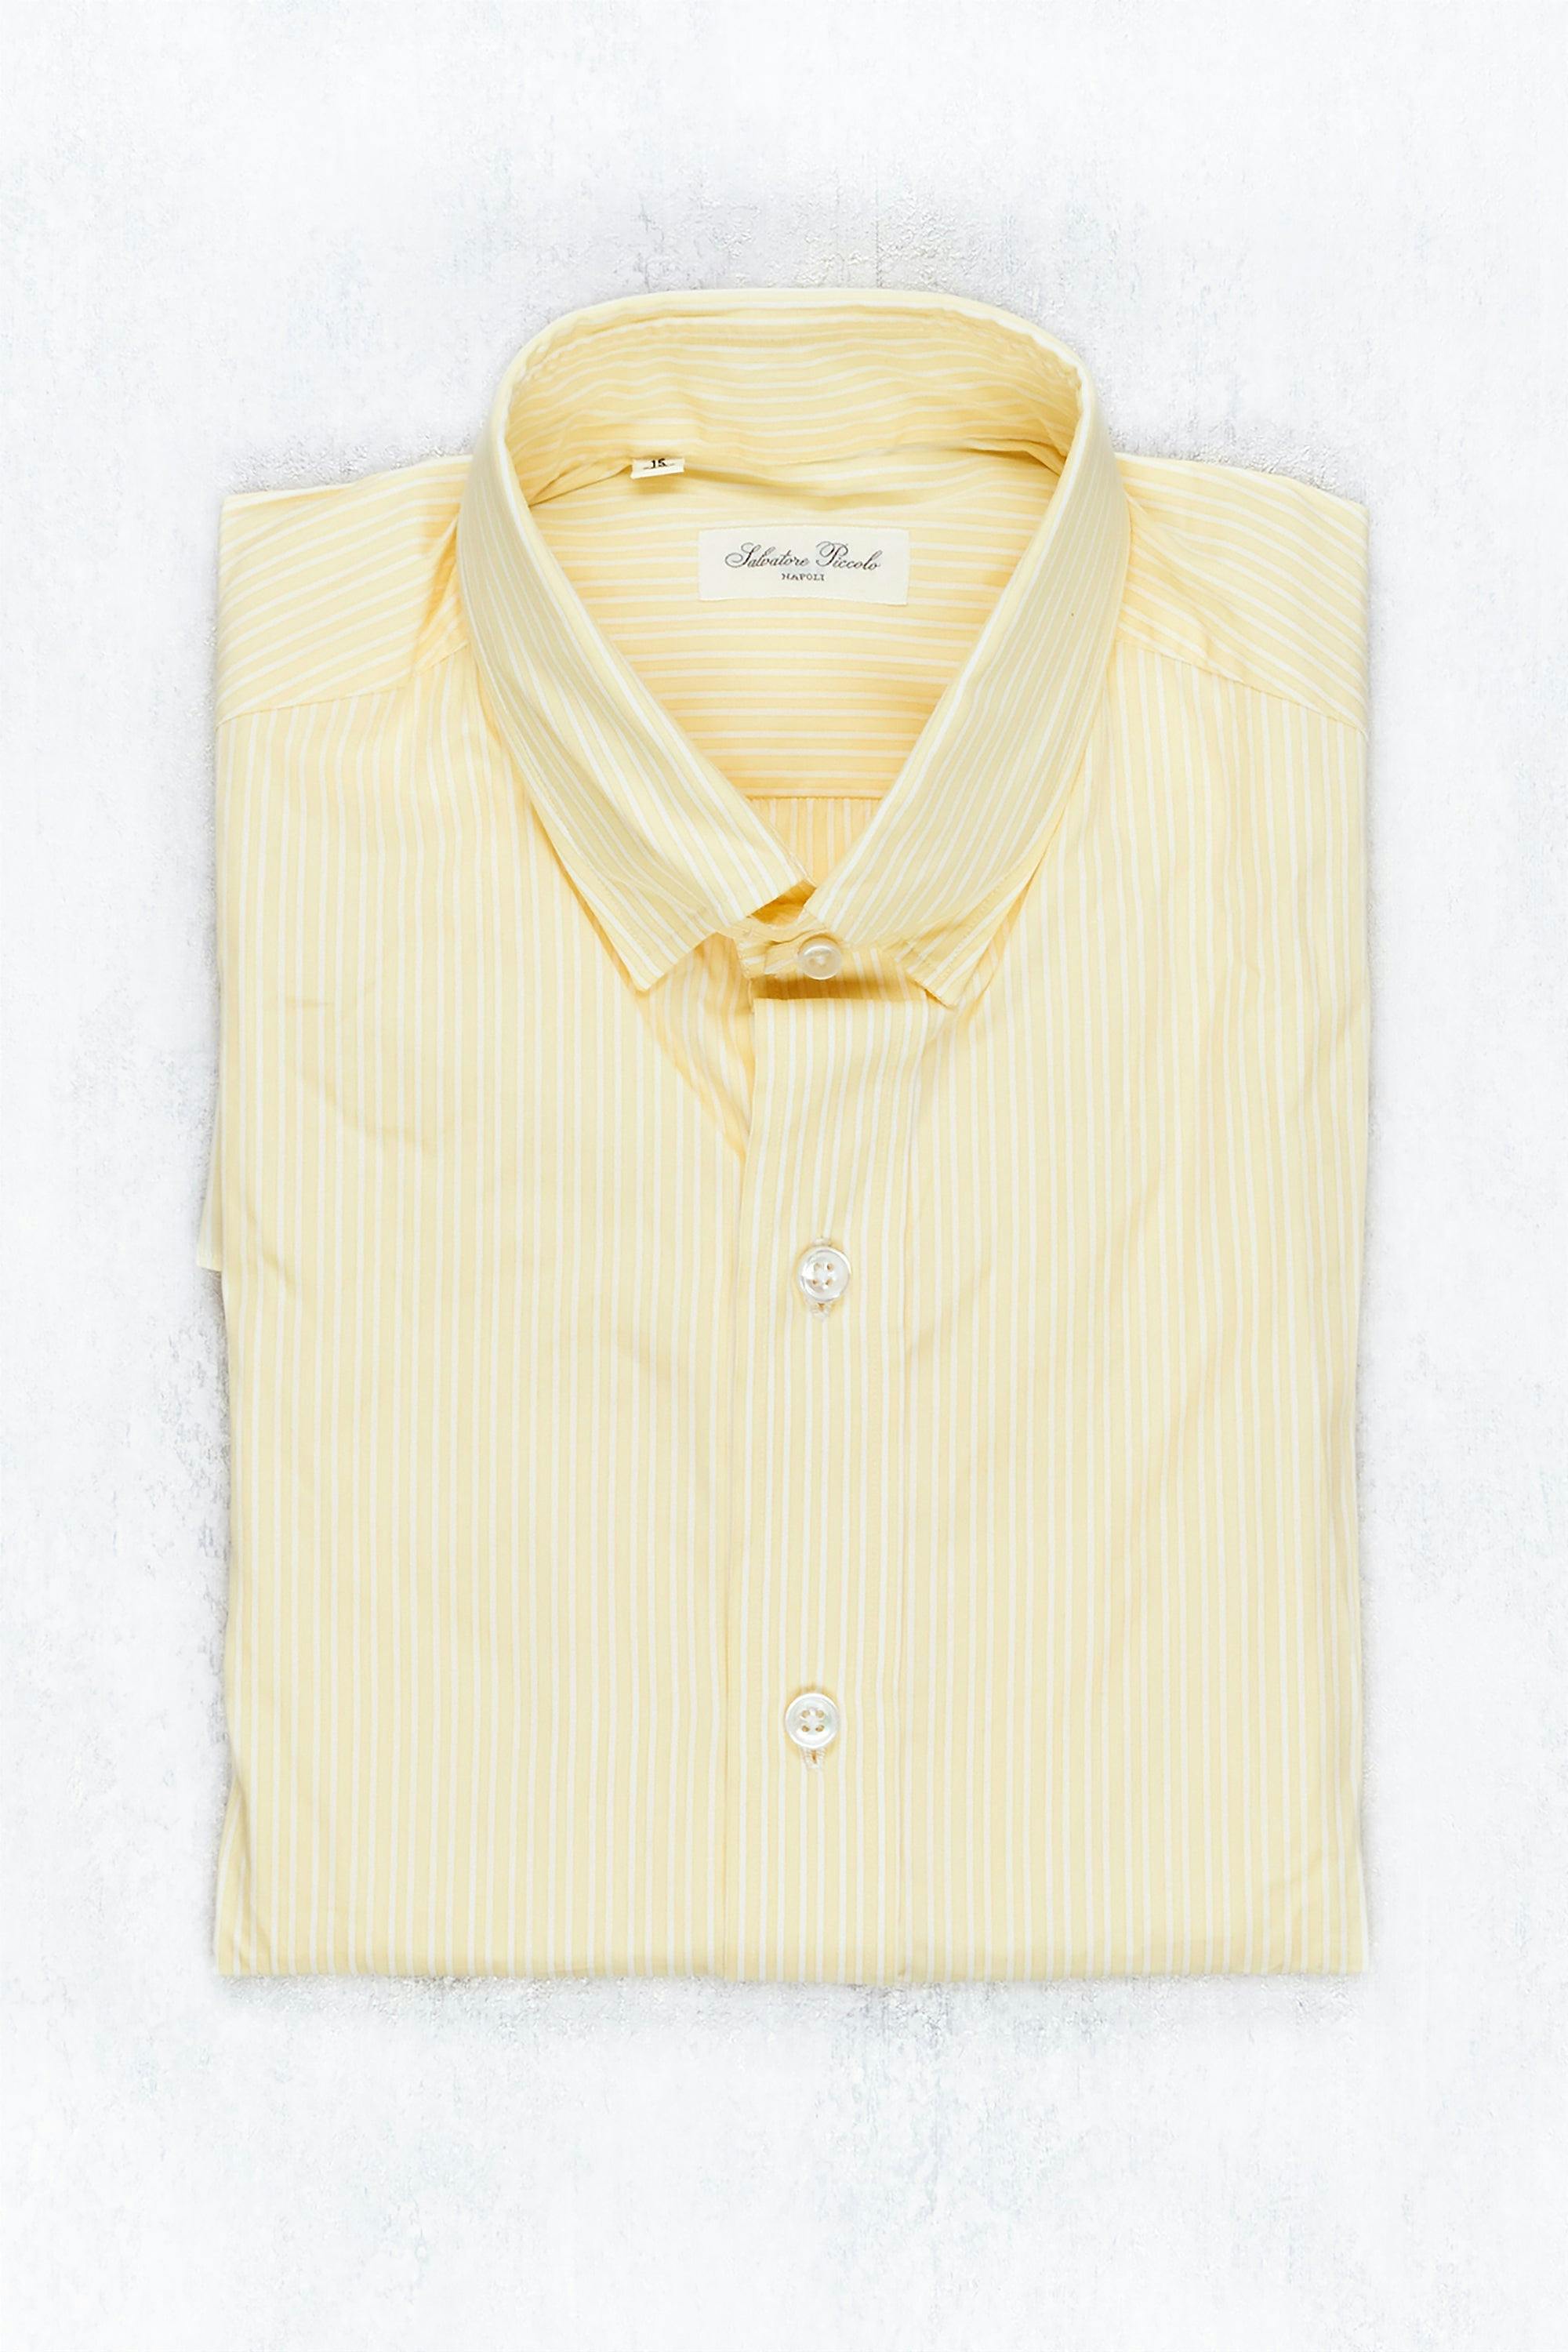 Salvatore Piccolo Yellow/White Stripe Cotton Spread Collar Shirt – Drop 93